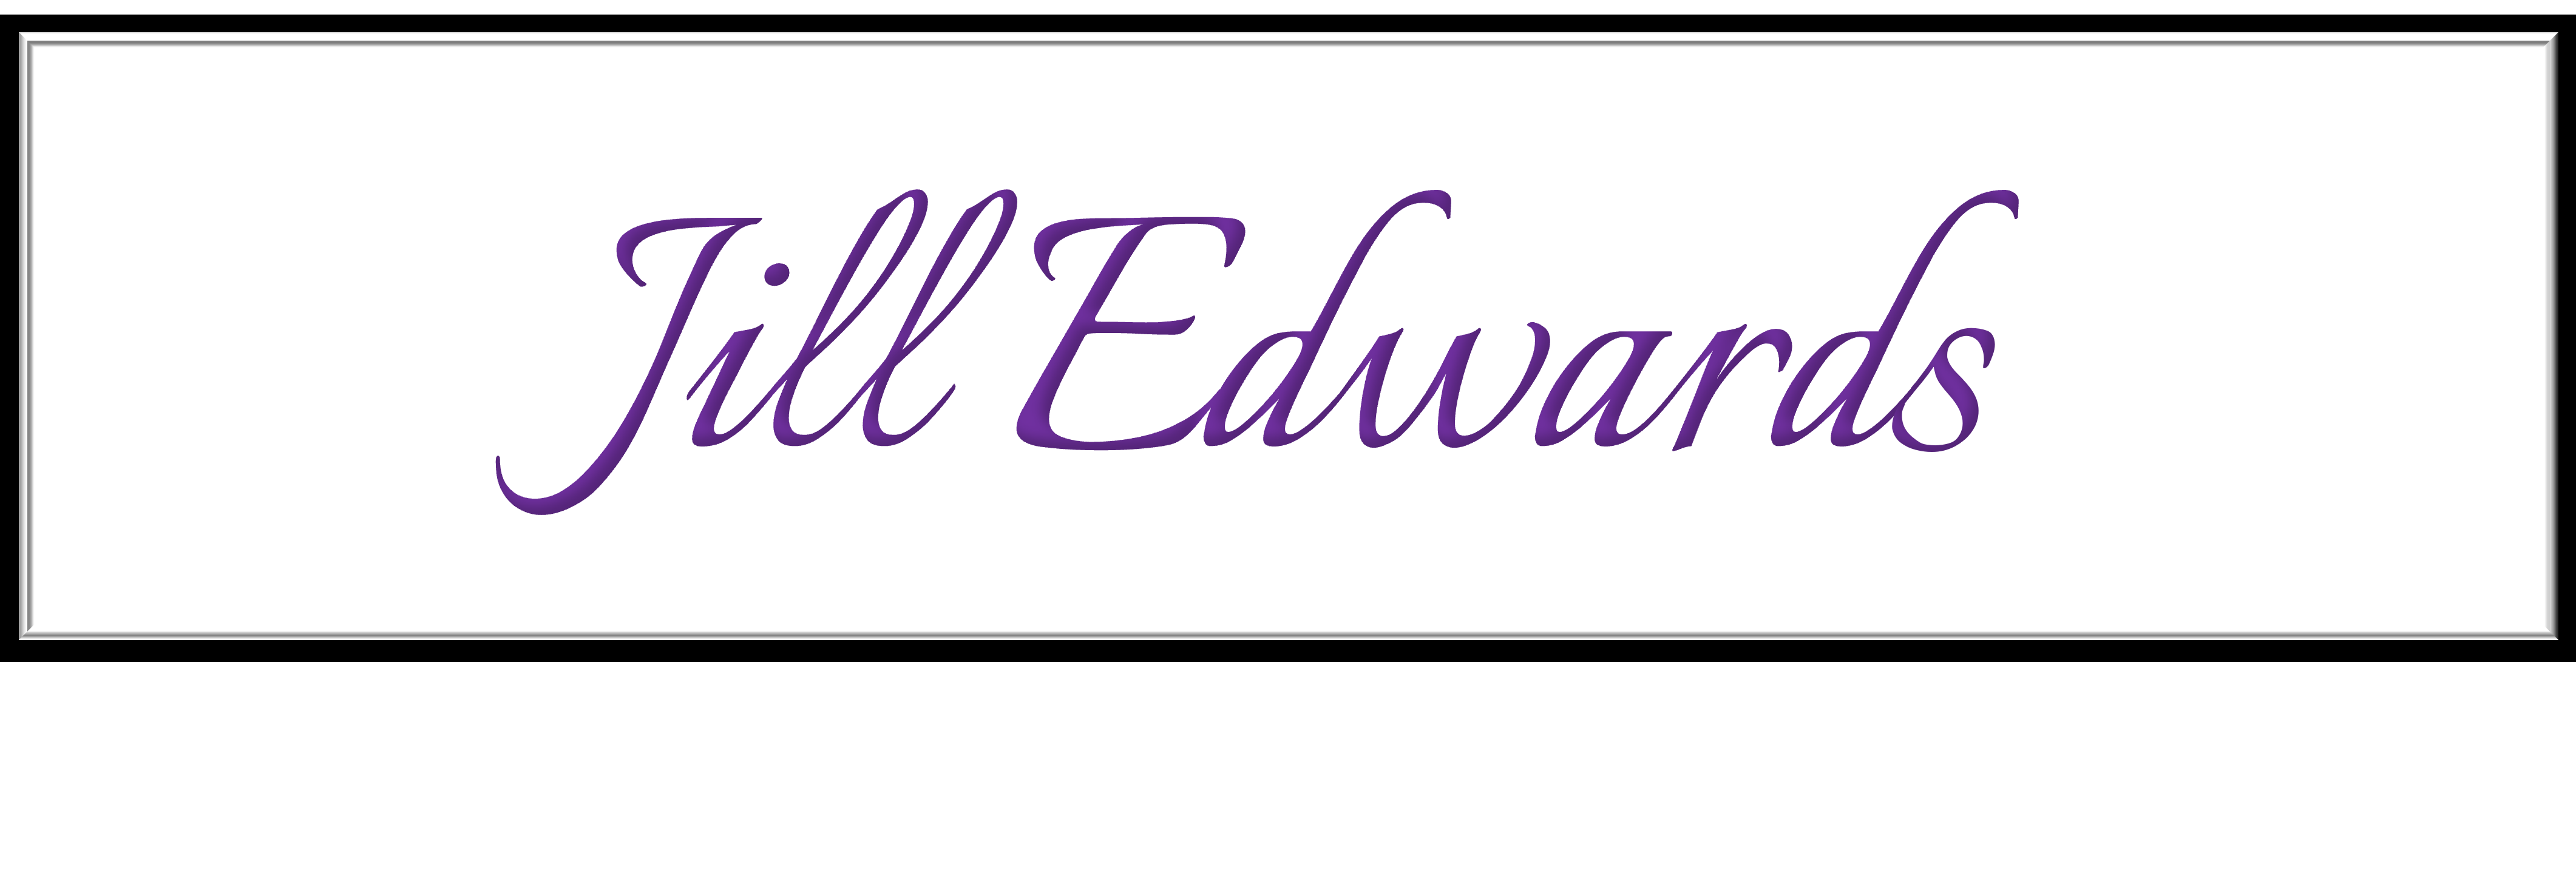 Jill Edwards LTD - Logo